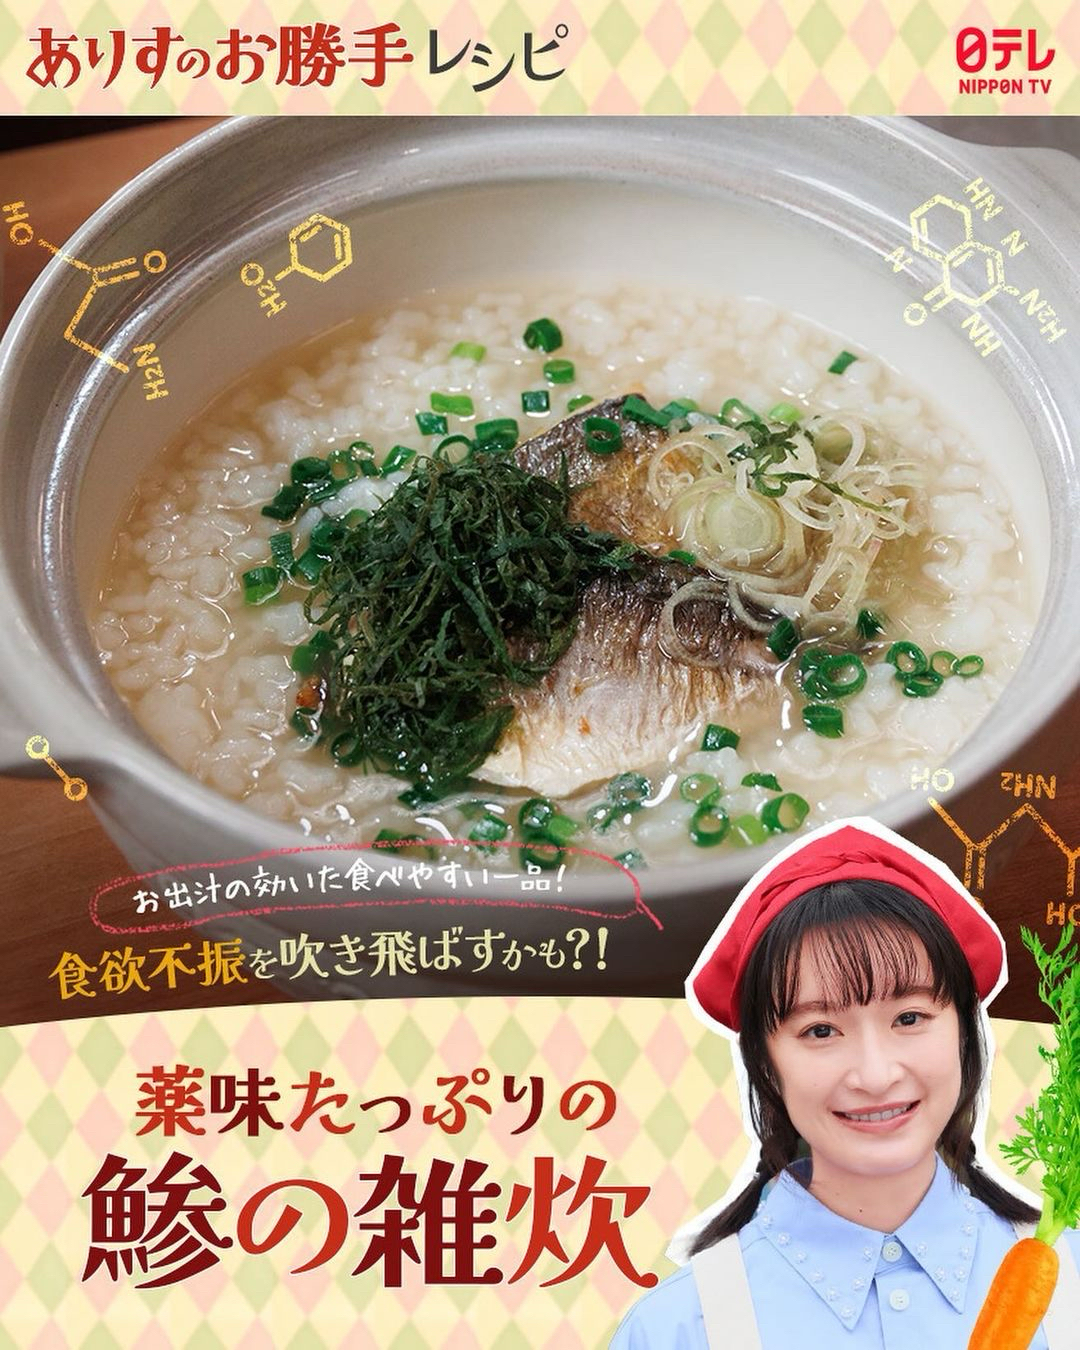 【爱丽丝】竹荚鱼杂烩粥的做法